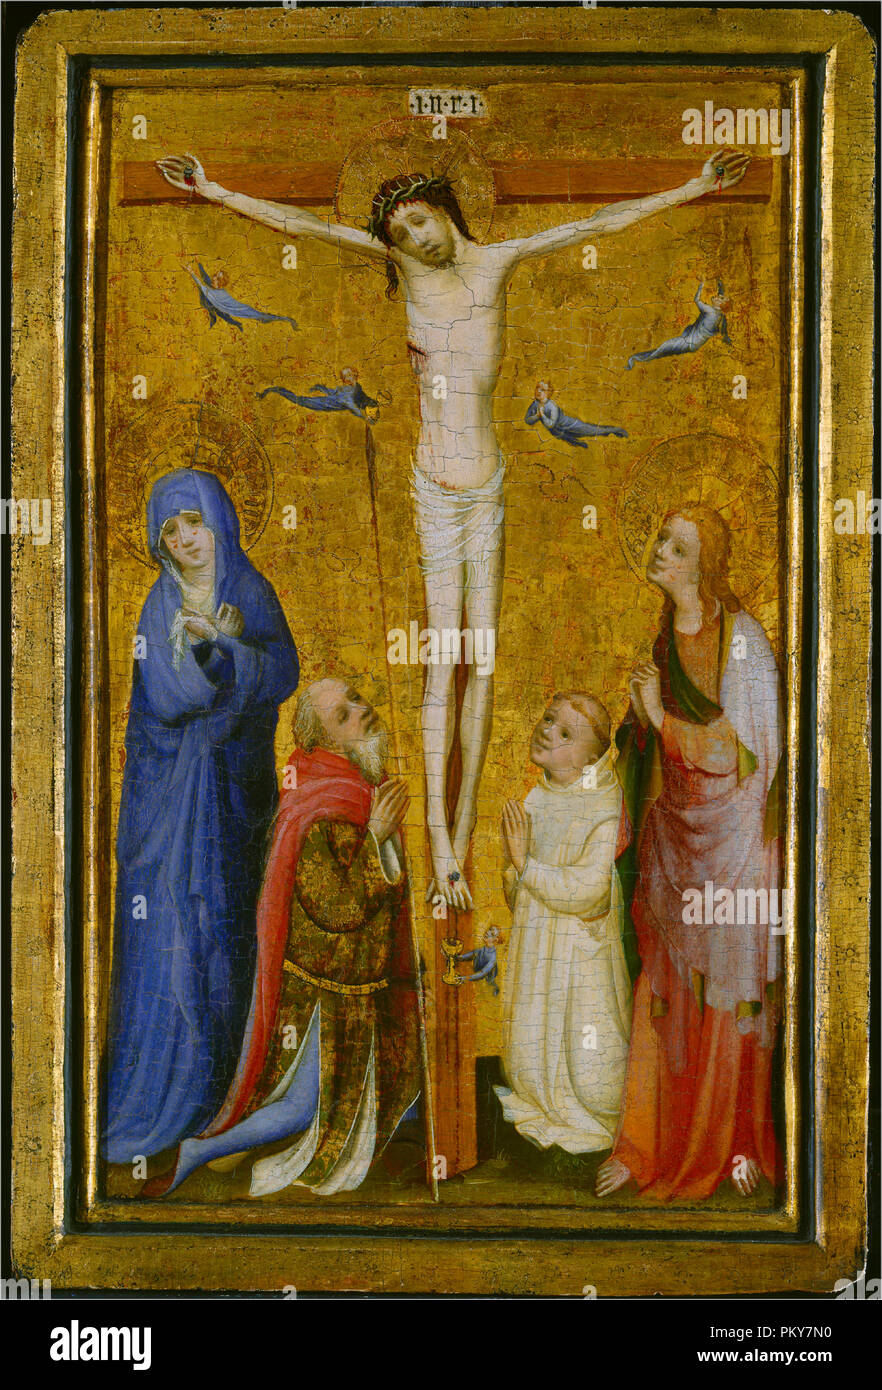 La Crucifixion. En date du : ch. 1400/1410. Dimensions : hors tout (zone de conception) : 40,7 x 25,2 cm (16 x 9 15/16 in.) support : 46,2 x 31,1 cm (18 3/16 x 12 1/4 in.) : 58,1 x 43,8 encadré x 4,4 cm (22 7/8 x 17 1/4 x 1 3/4 in.). Medium : Oil on panel. Musée : National Gallery of Art, Washington DC. Author : Master of Saint Veronica. Banque D'Images